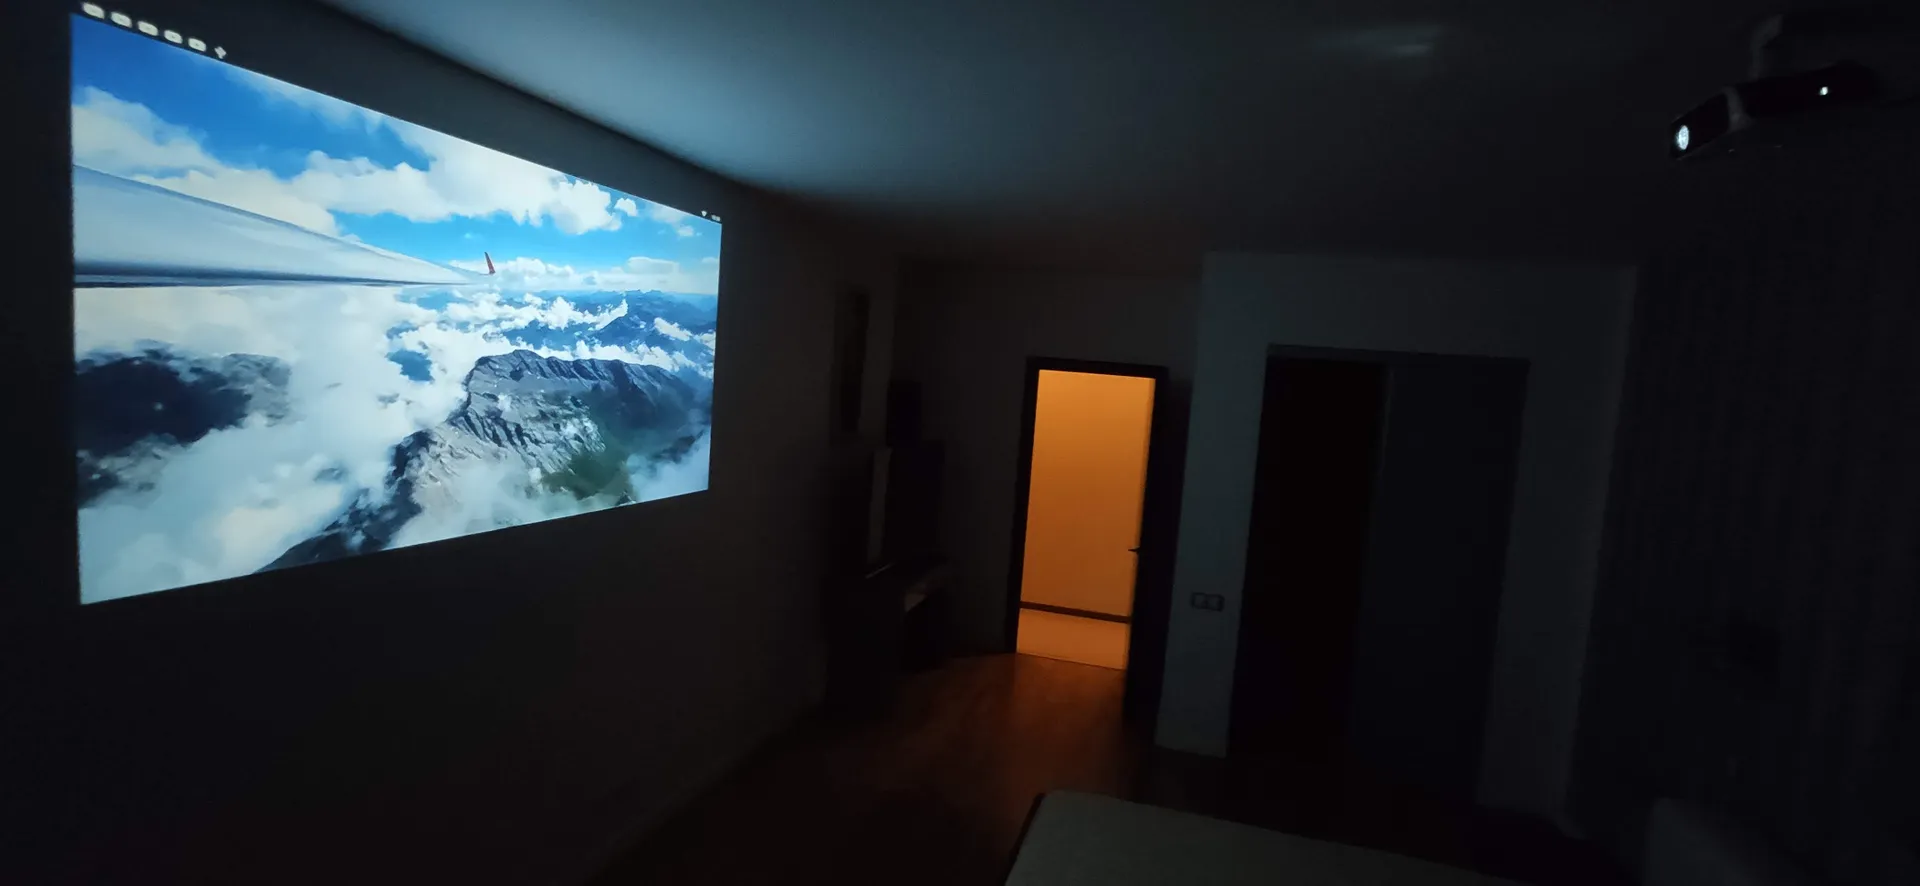 Вечером в хозяйской спальне можно смотреть full HD проектор. Звук идет через оригинальную  JBL xtreme